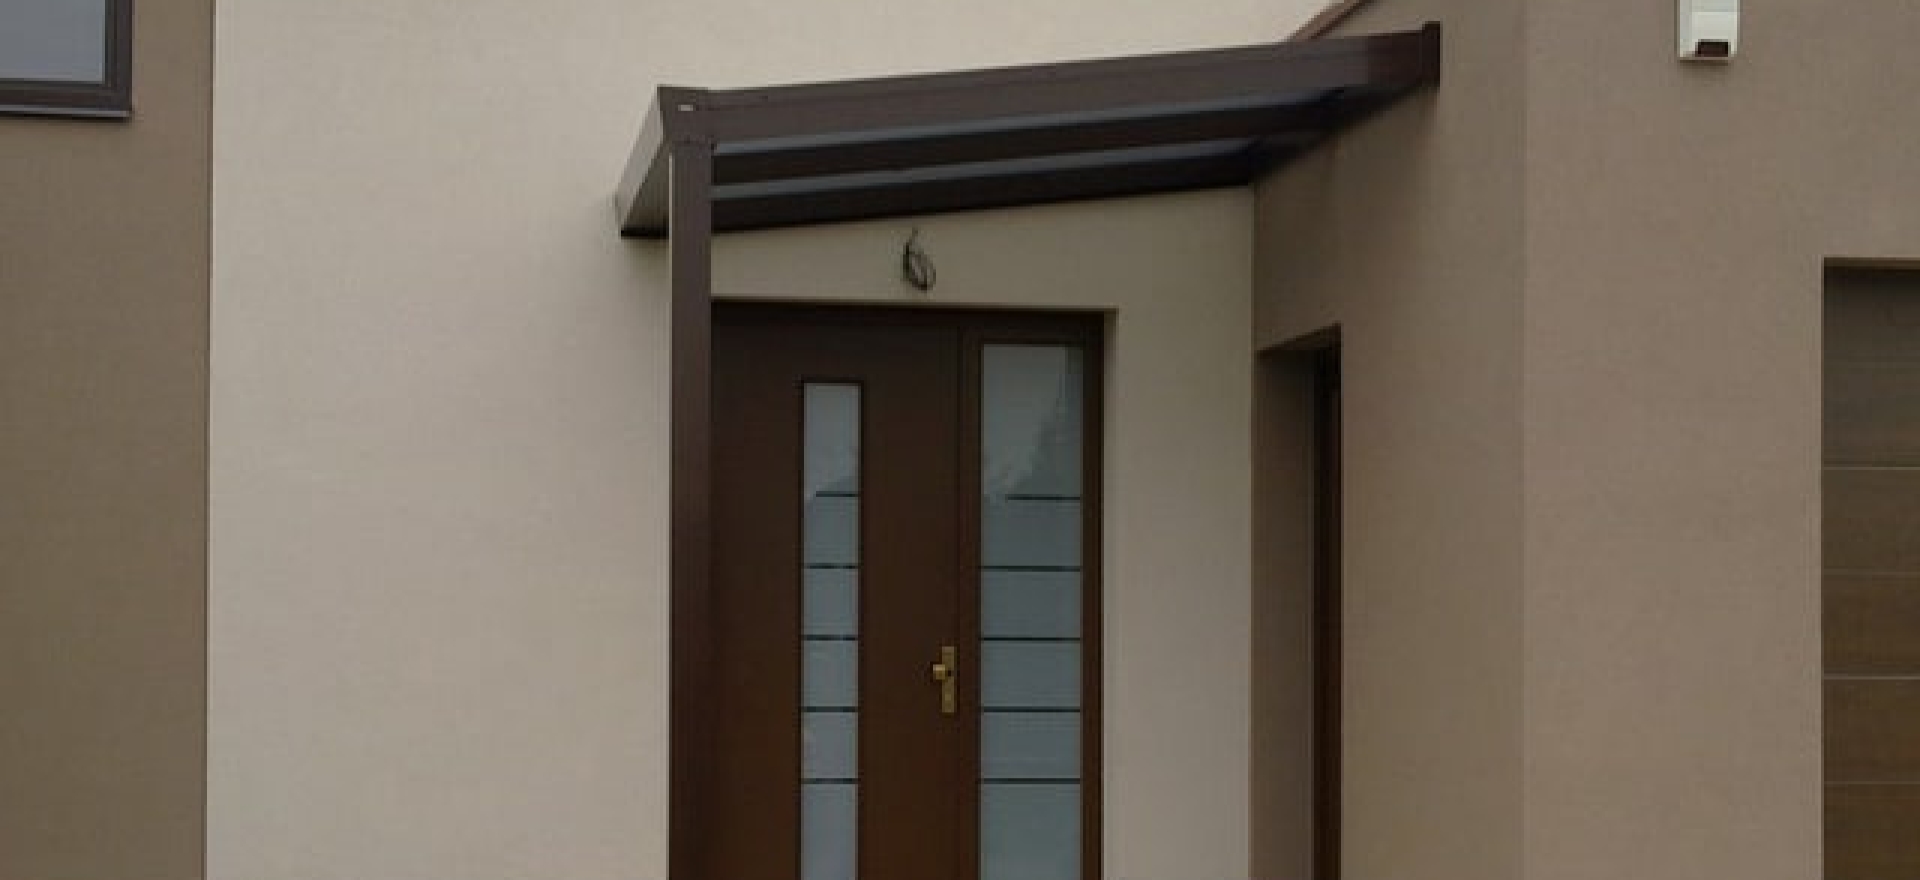 hliníkový přístřešek nad dveře